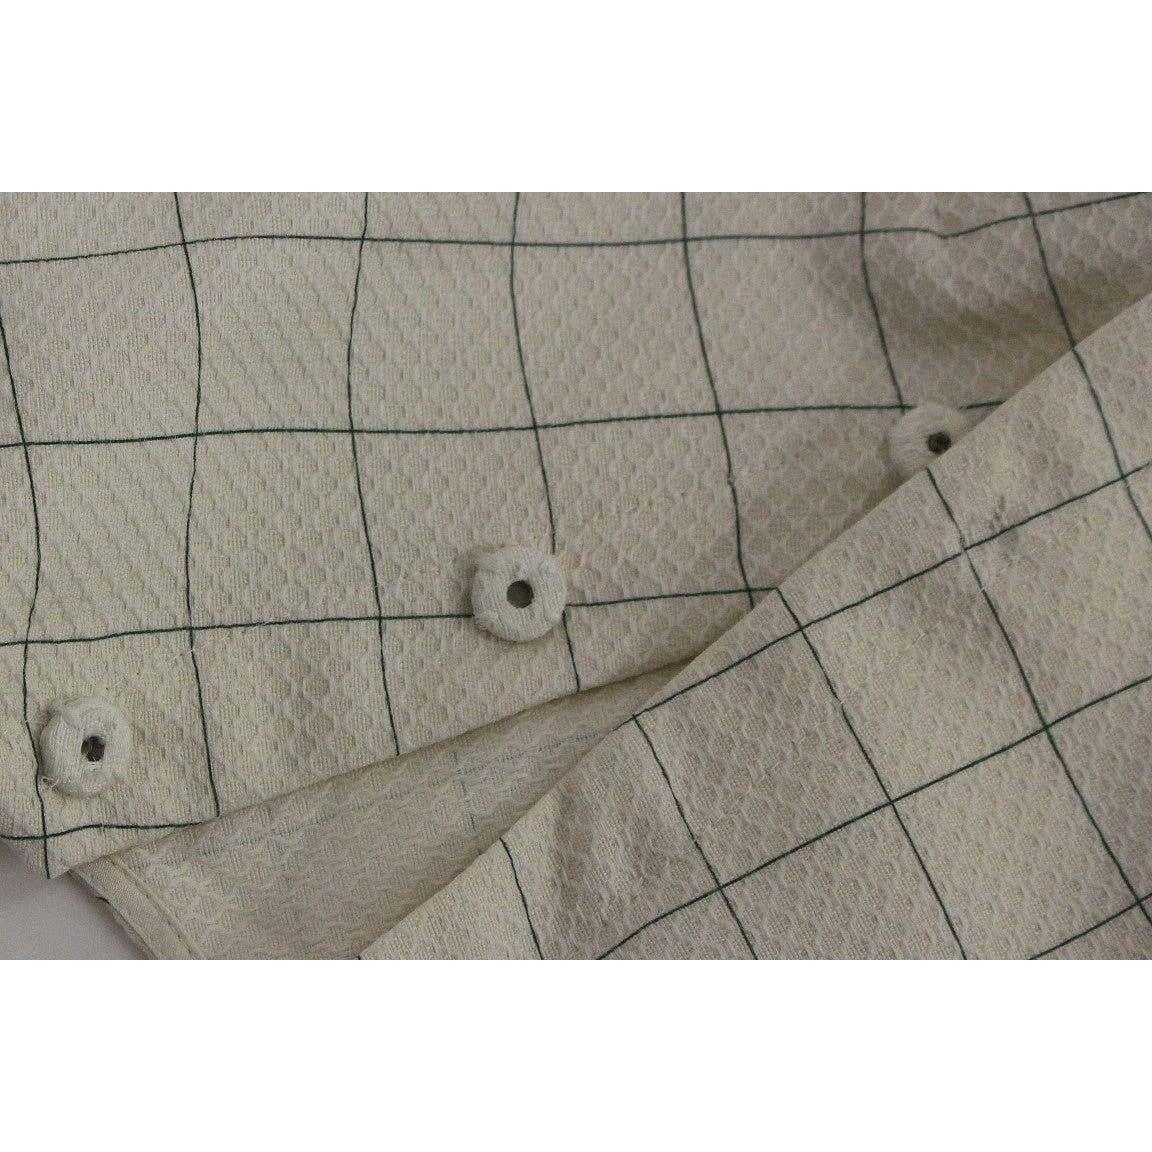 Andrea Incontri Chic White Sleeveless Cotton Shirt Top white-cotton-checkered-shirt-top 148803-white-cotton-checkered-shirt-top-4.jpg